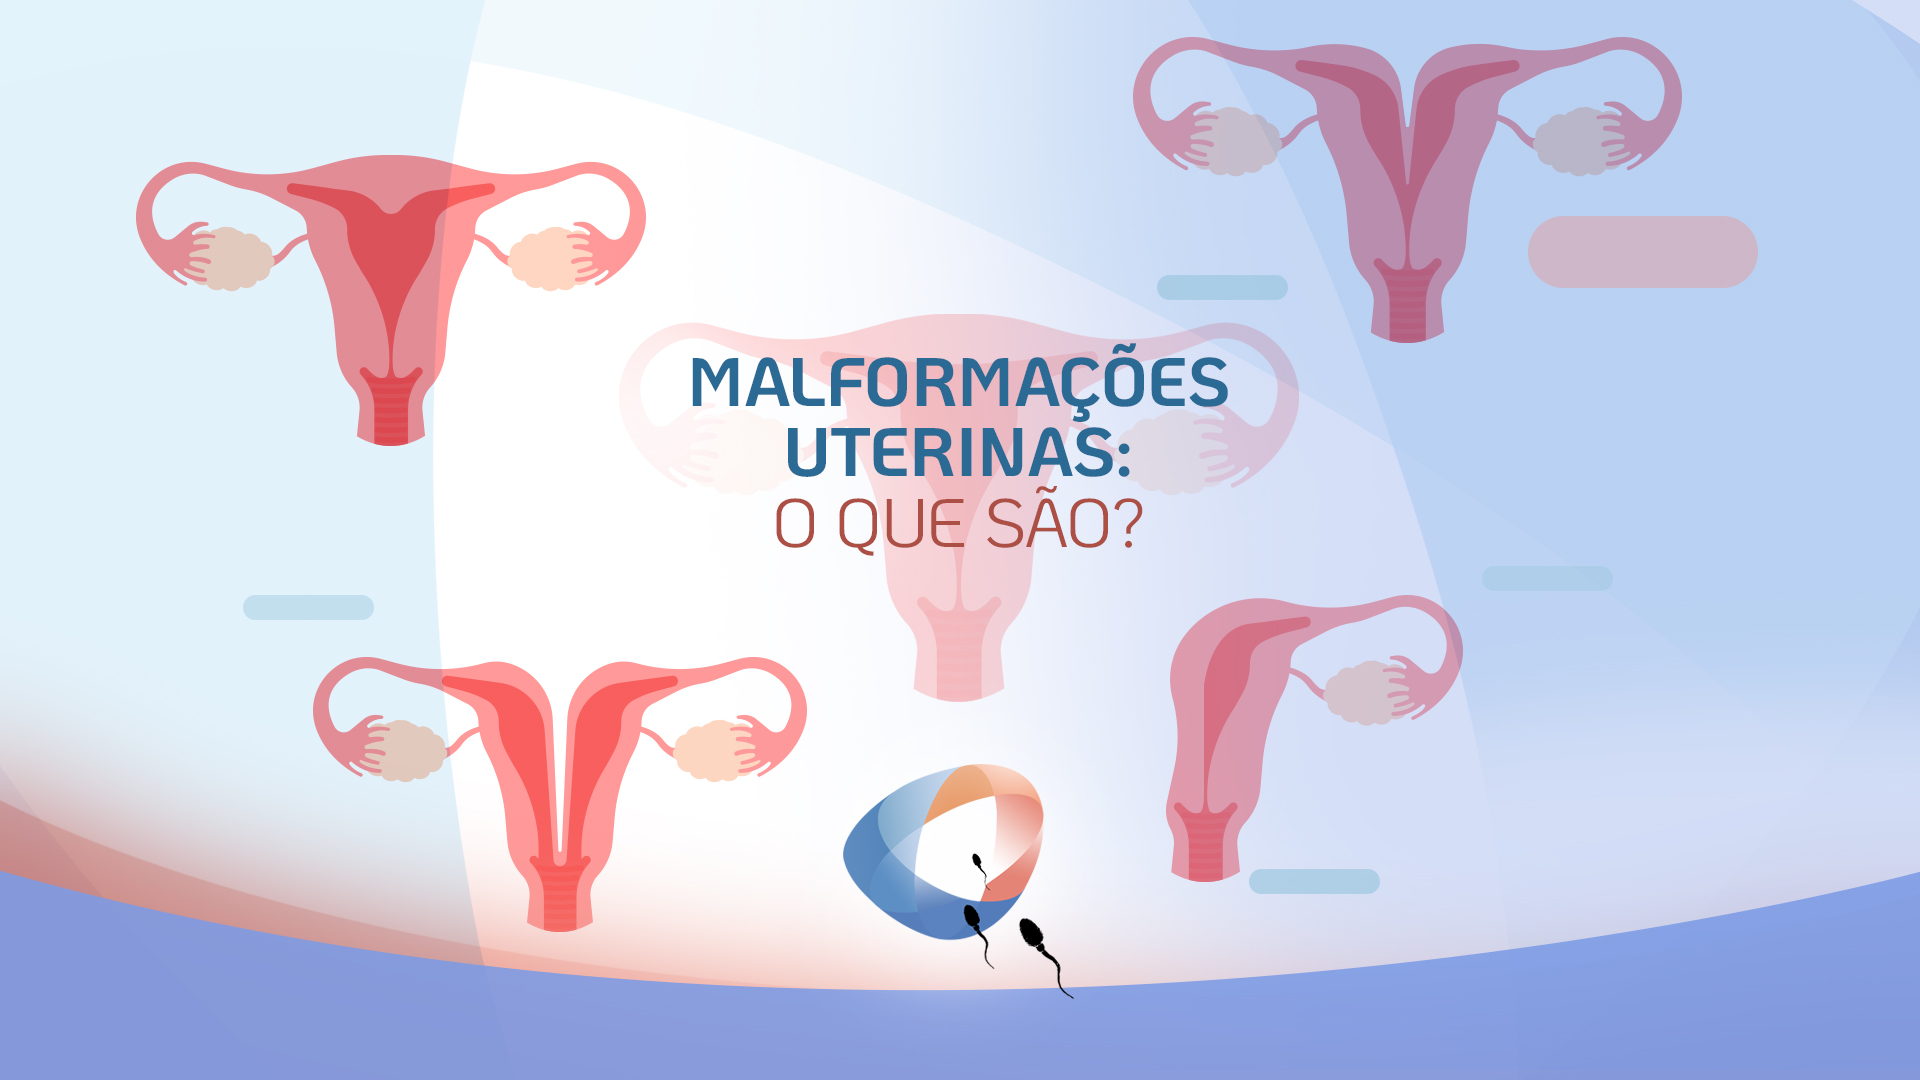 Malformações uterinas o que são Dr Augusto Bussab Reprodução Humana